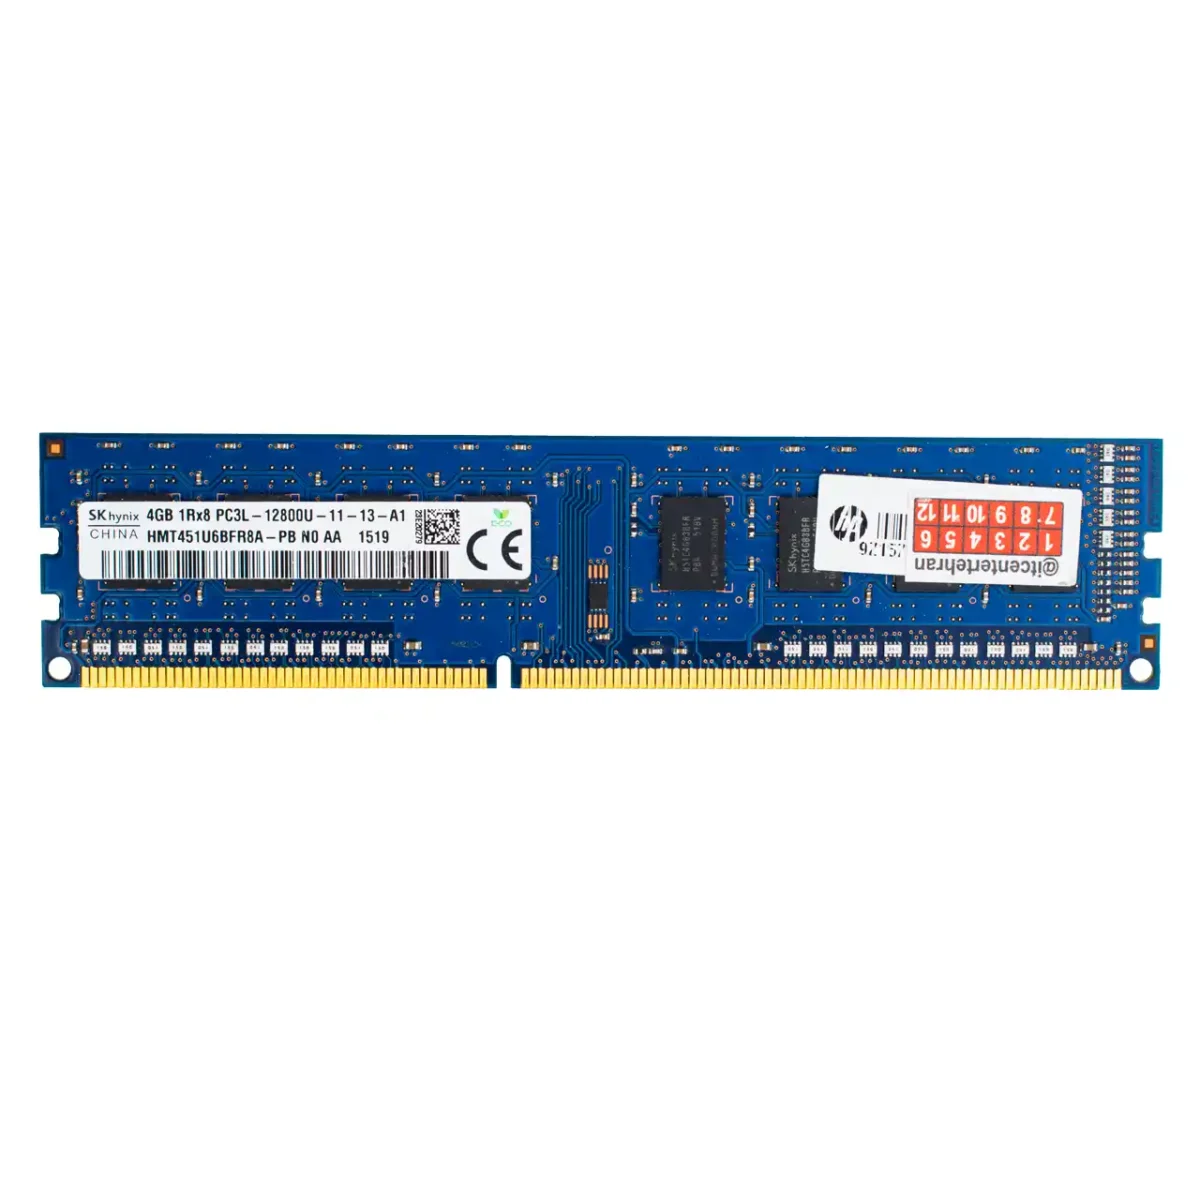 رم استوک کامپیوتر اس کی هاینیکس DDR3 تک کاناله 1600 مگاهرتز PC3L ظرفیت 4 گیگابایت